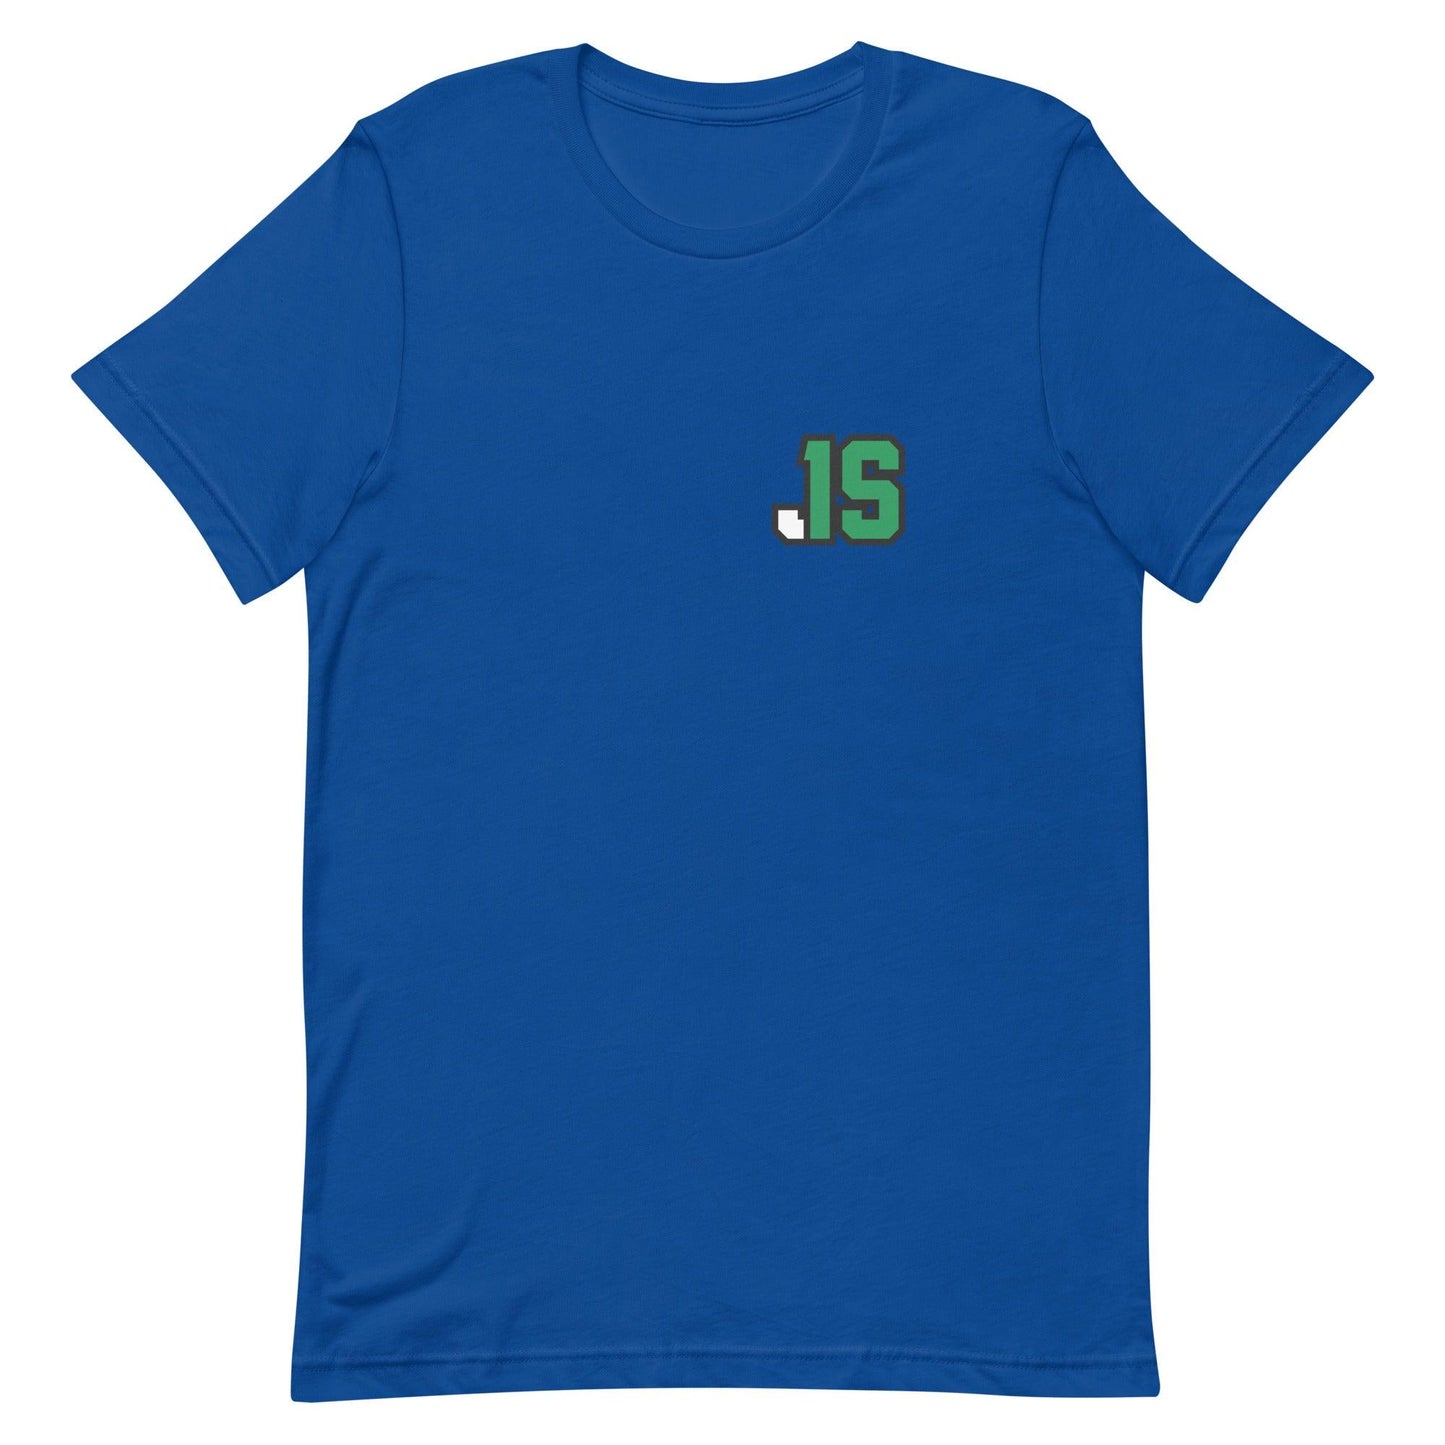 Jyaire Shorter "JS1" t-shirt - Fan Arch